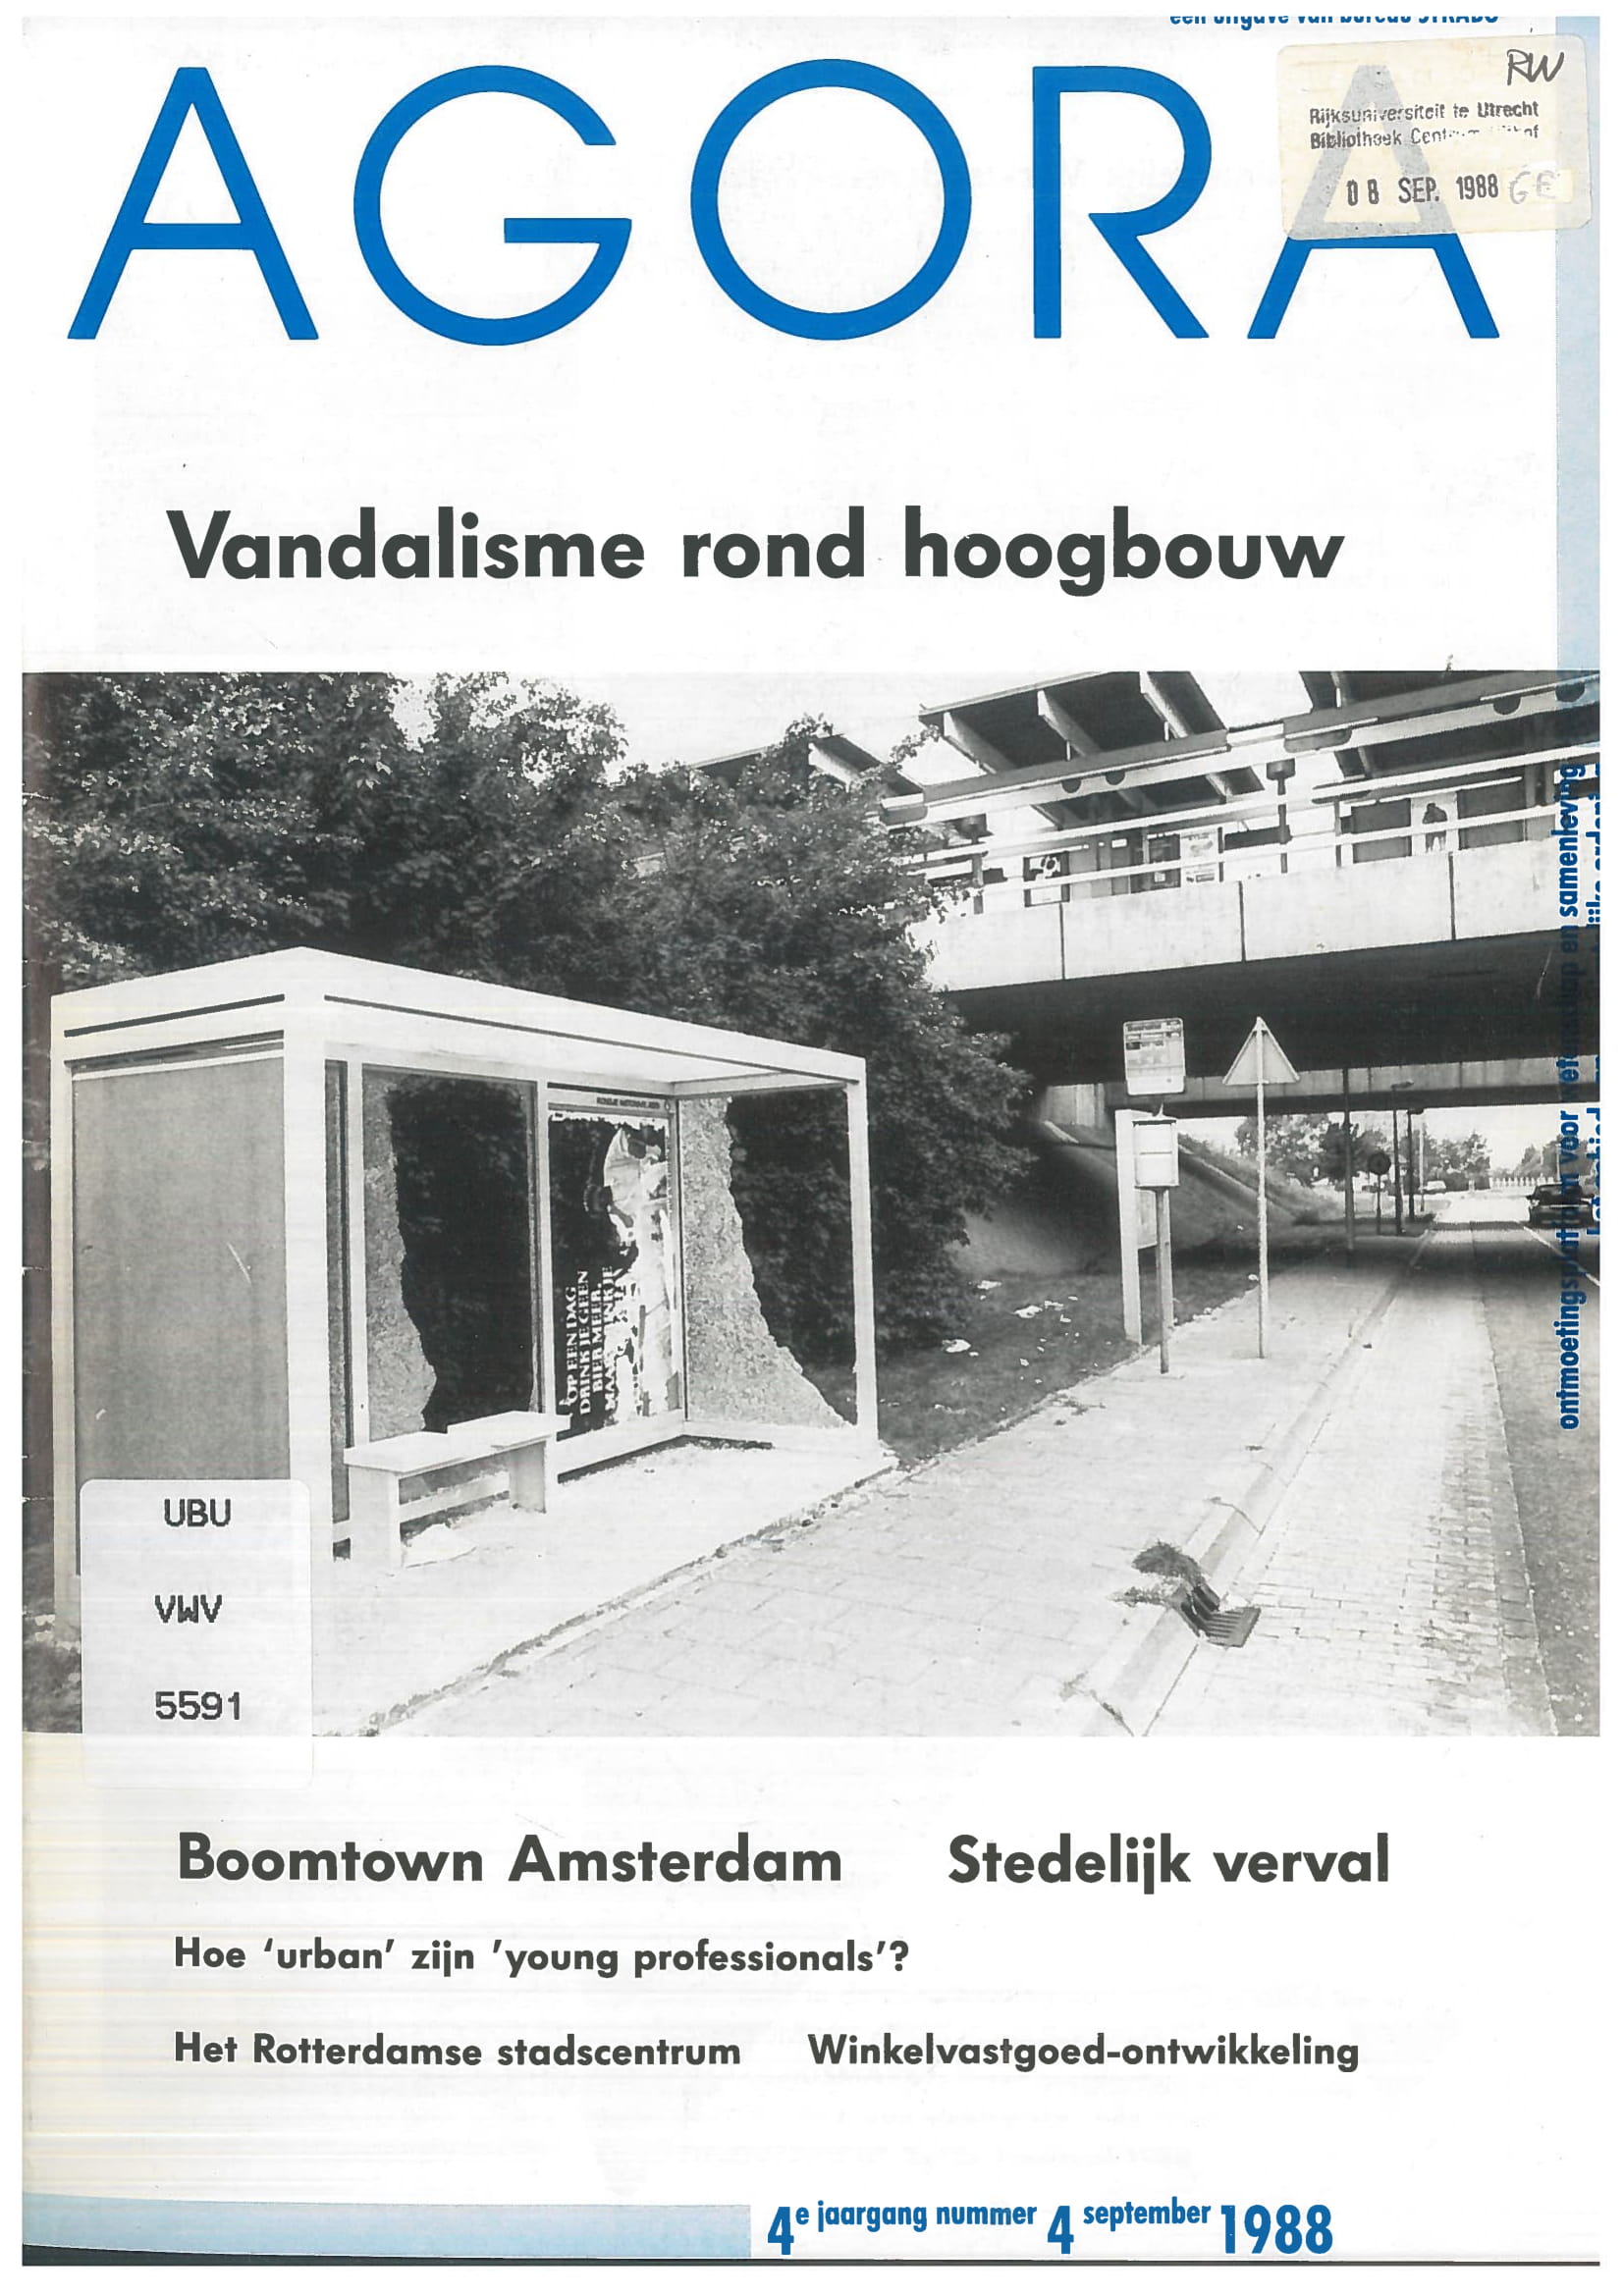 Stedelijk verval in Groningen: een model-analyse